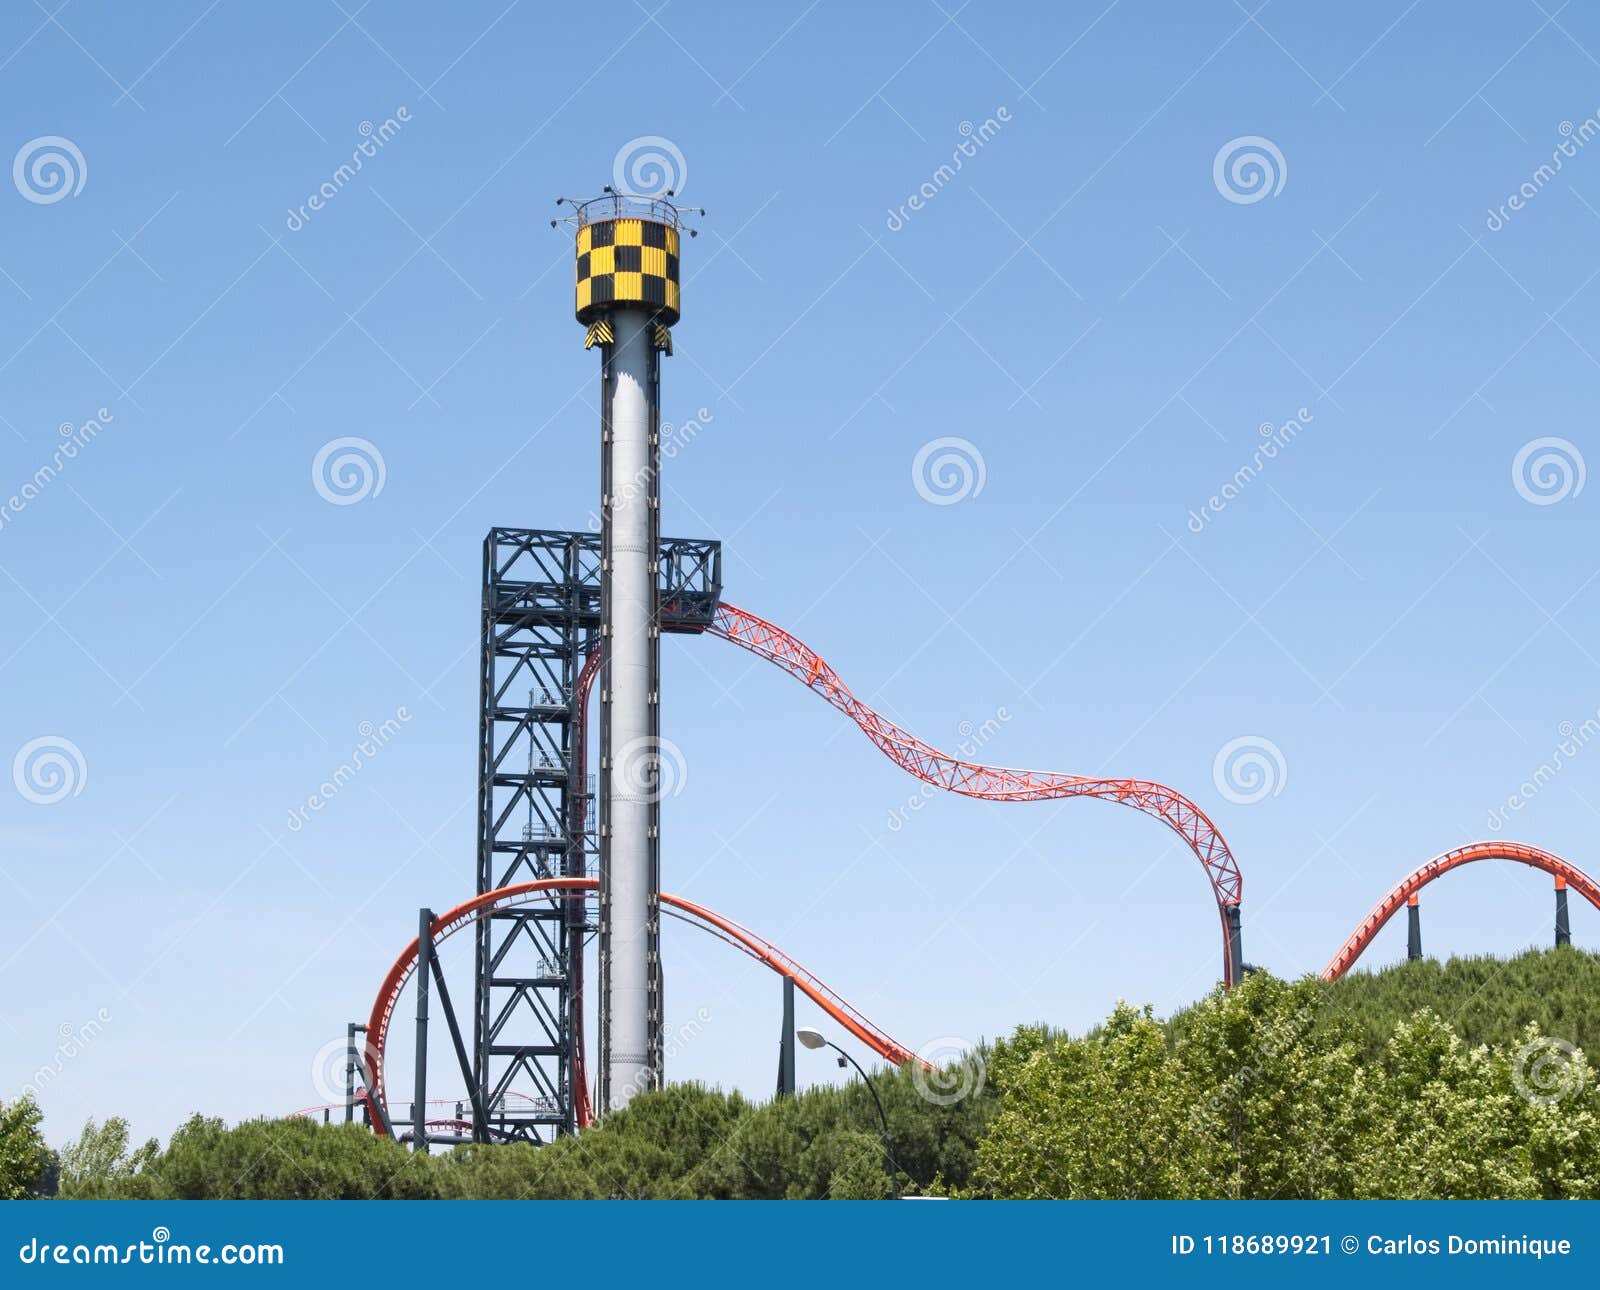 roller coaster in parque de atracciones de madrid amusement park